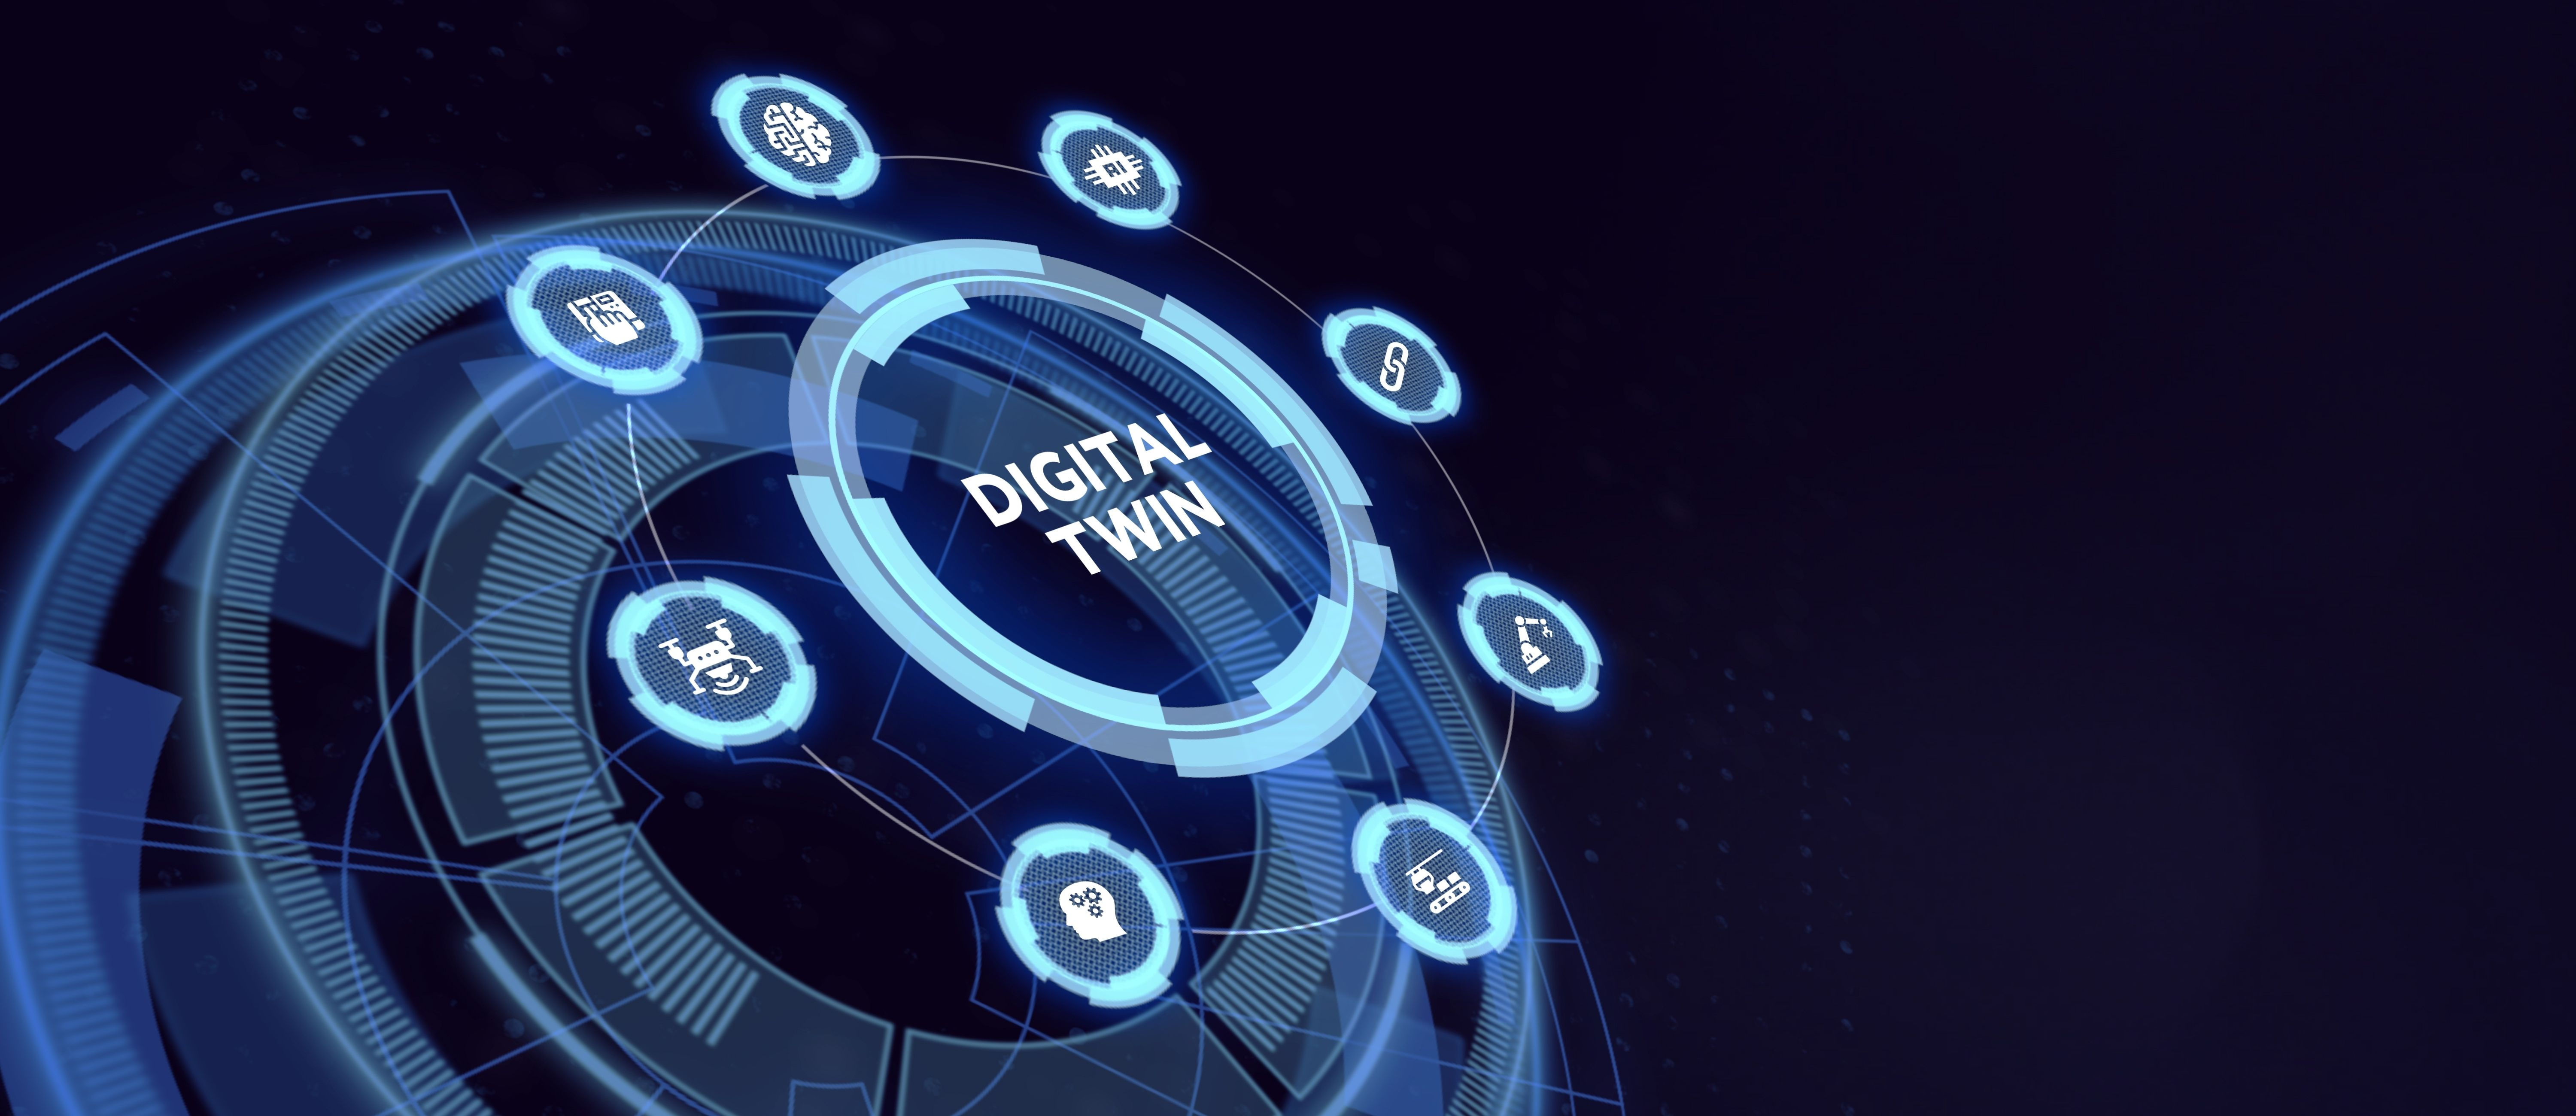 Come i Digital Twin cambiano il volto della Smart Factory